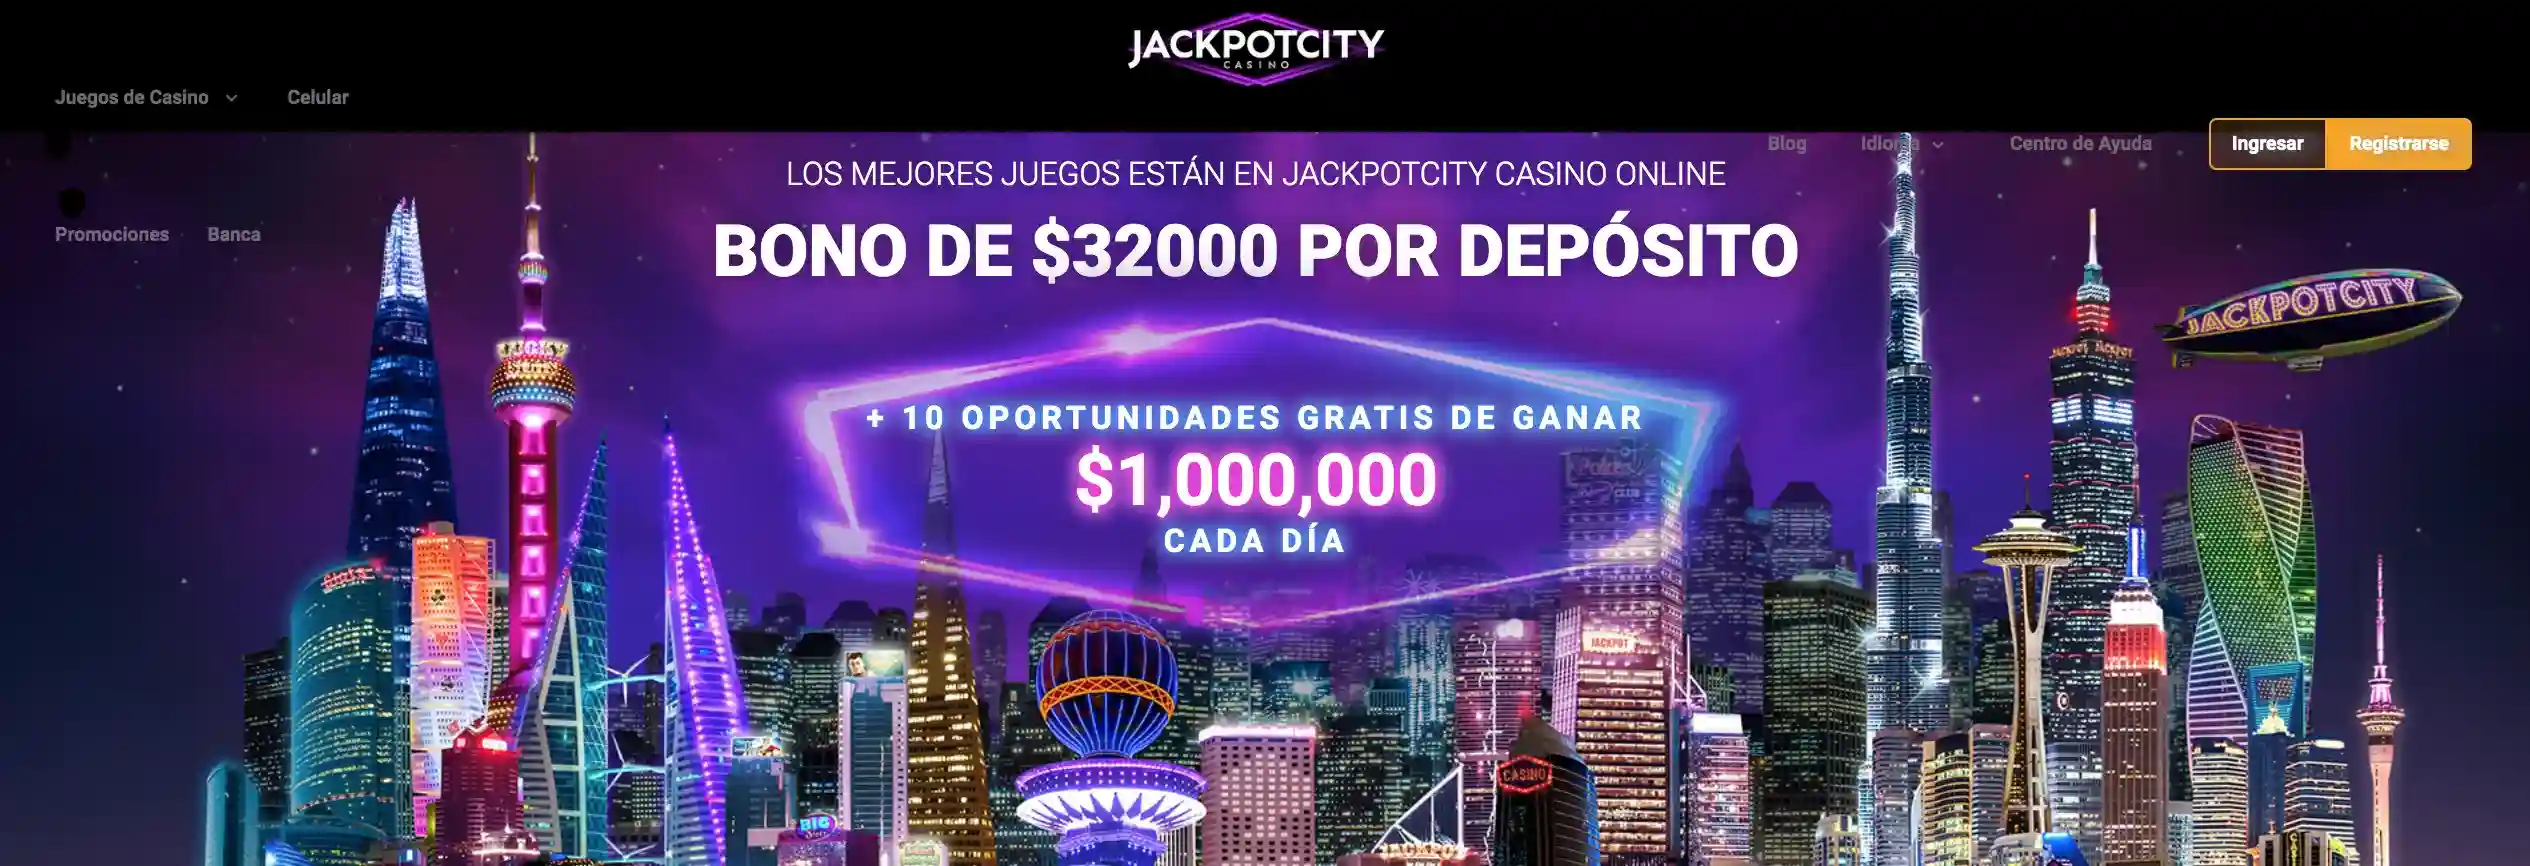 JackpotCity Ecuador